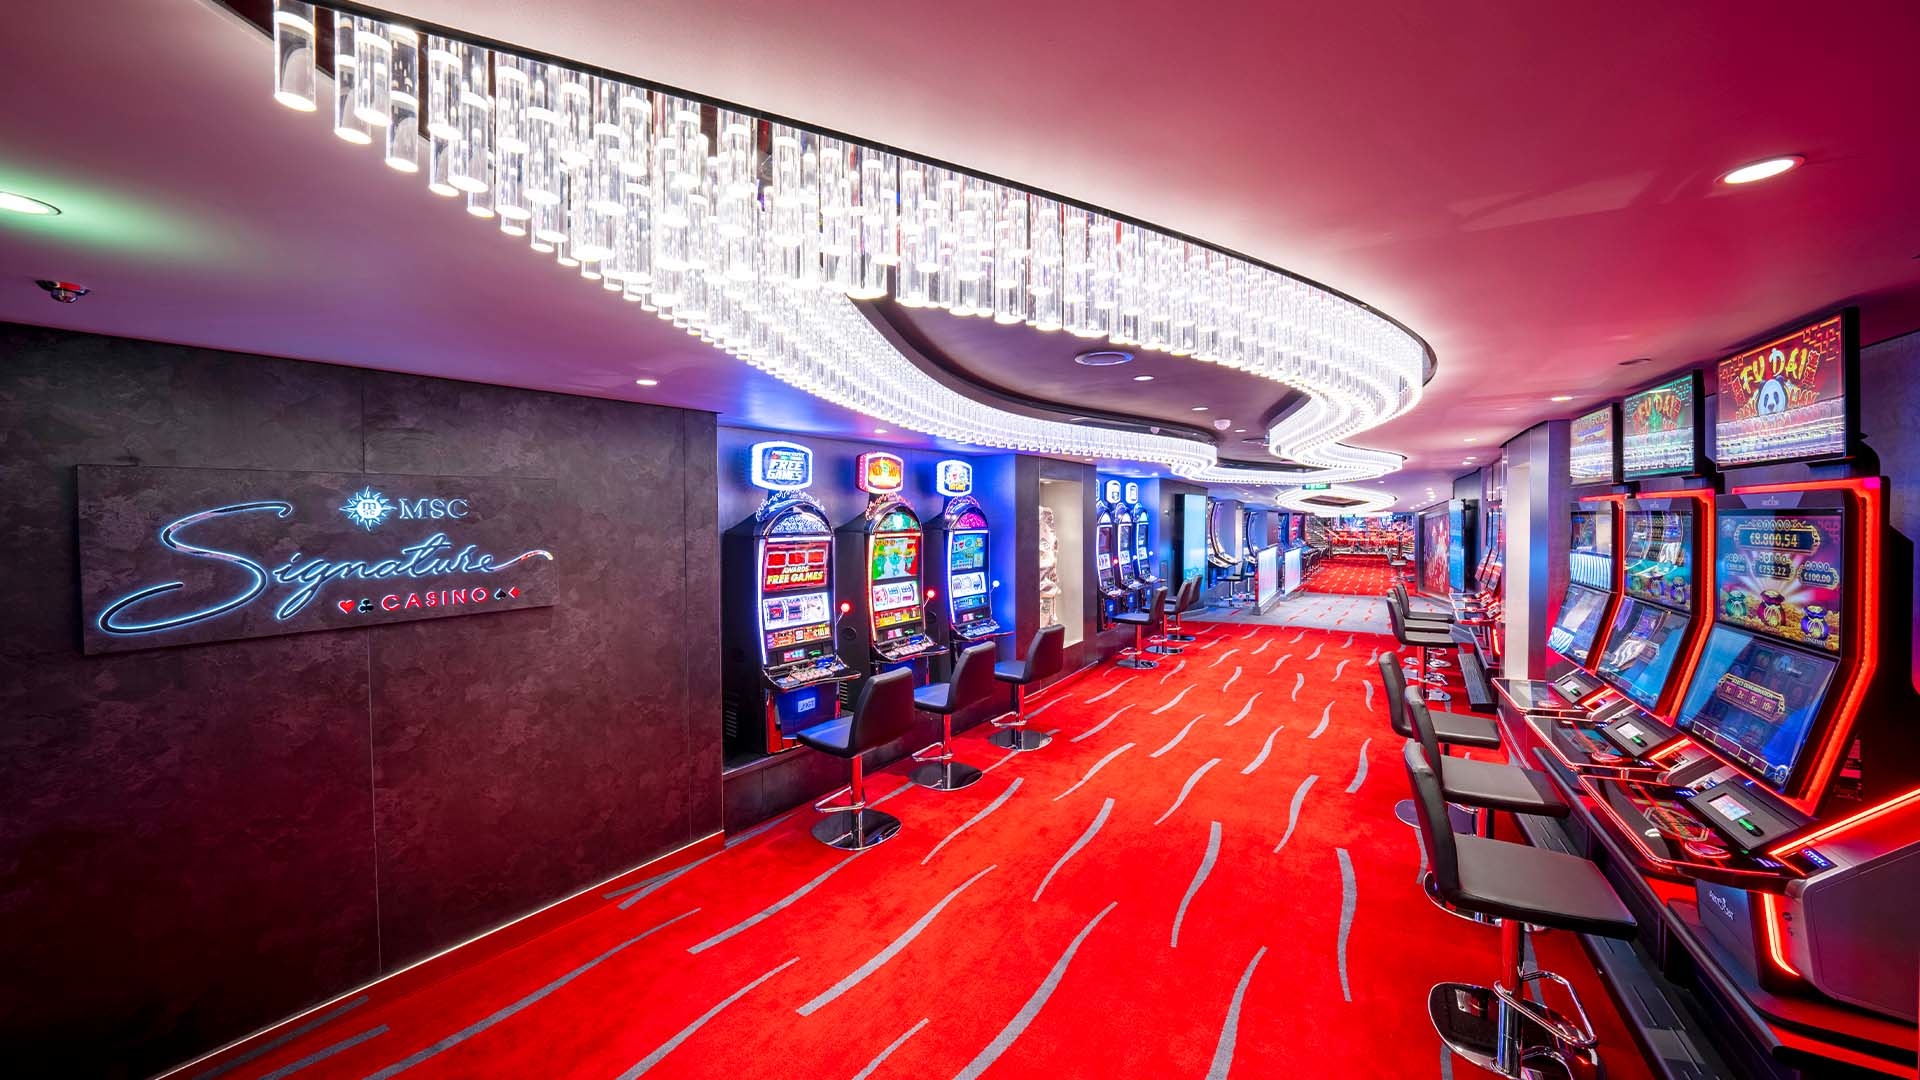 MSC Seascape Casino